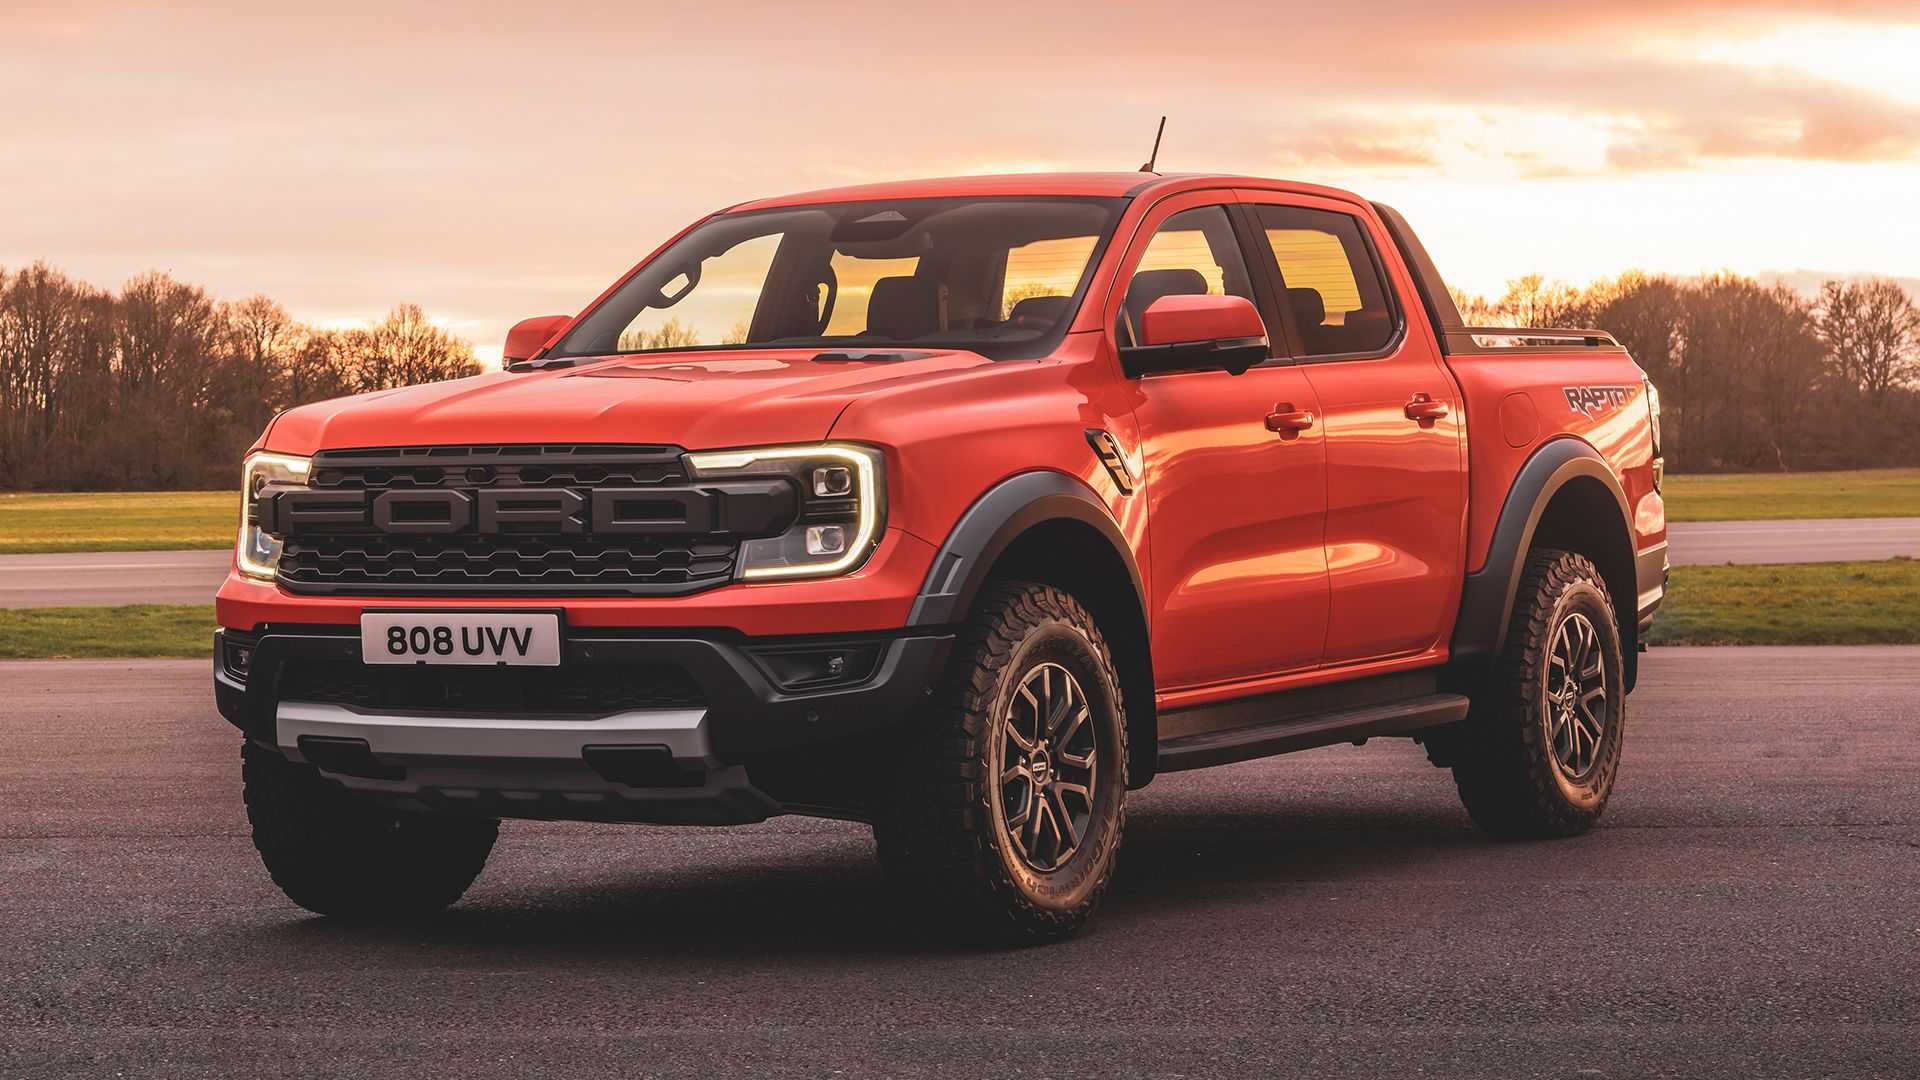 Ford Ranger News